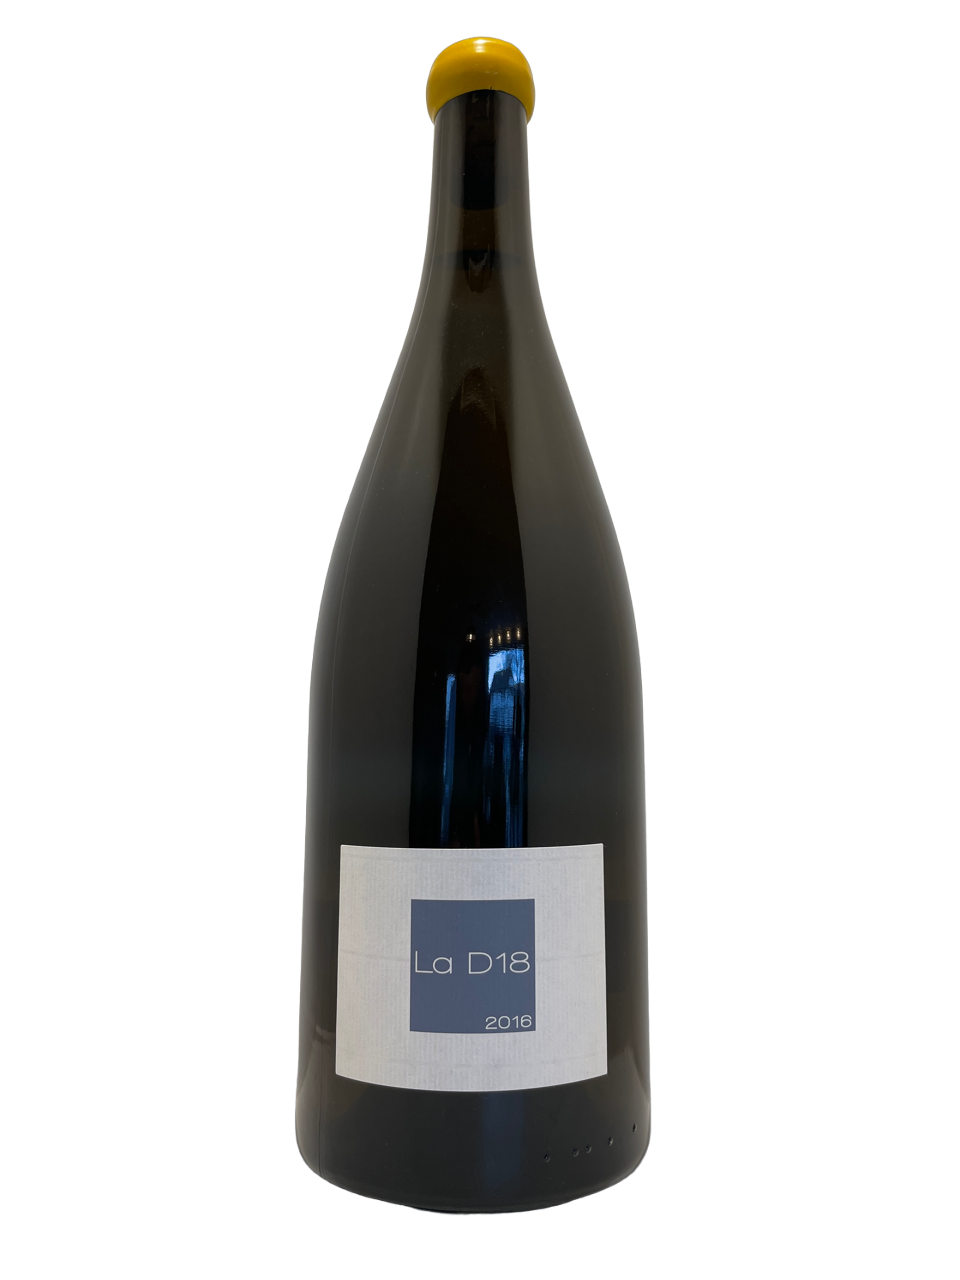 Lnaguedoc roussillon domaine olivier pithon vin biodynamie organic wine igp côtes catalanes la D18 magnum blanc